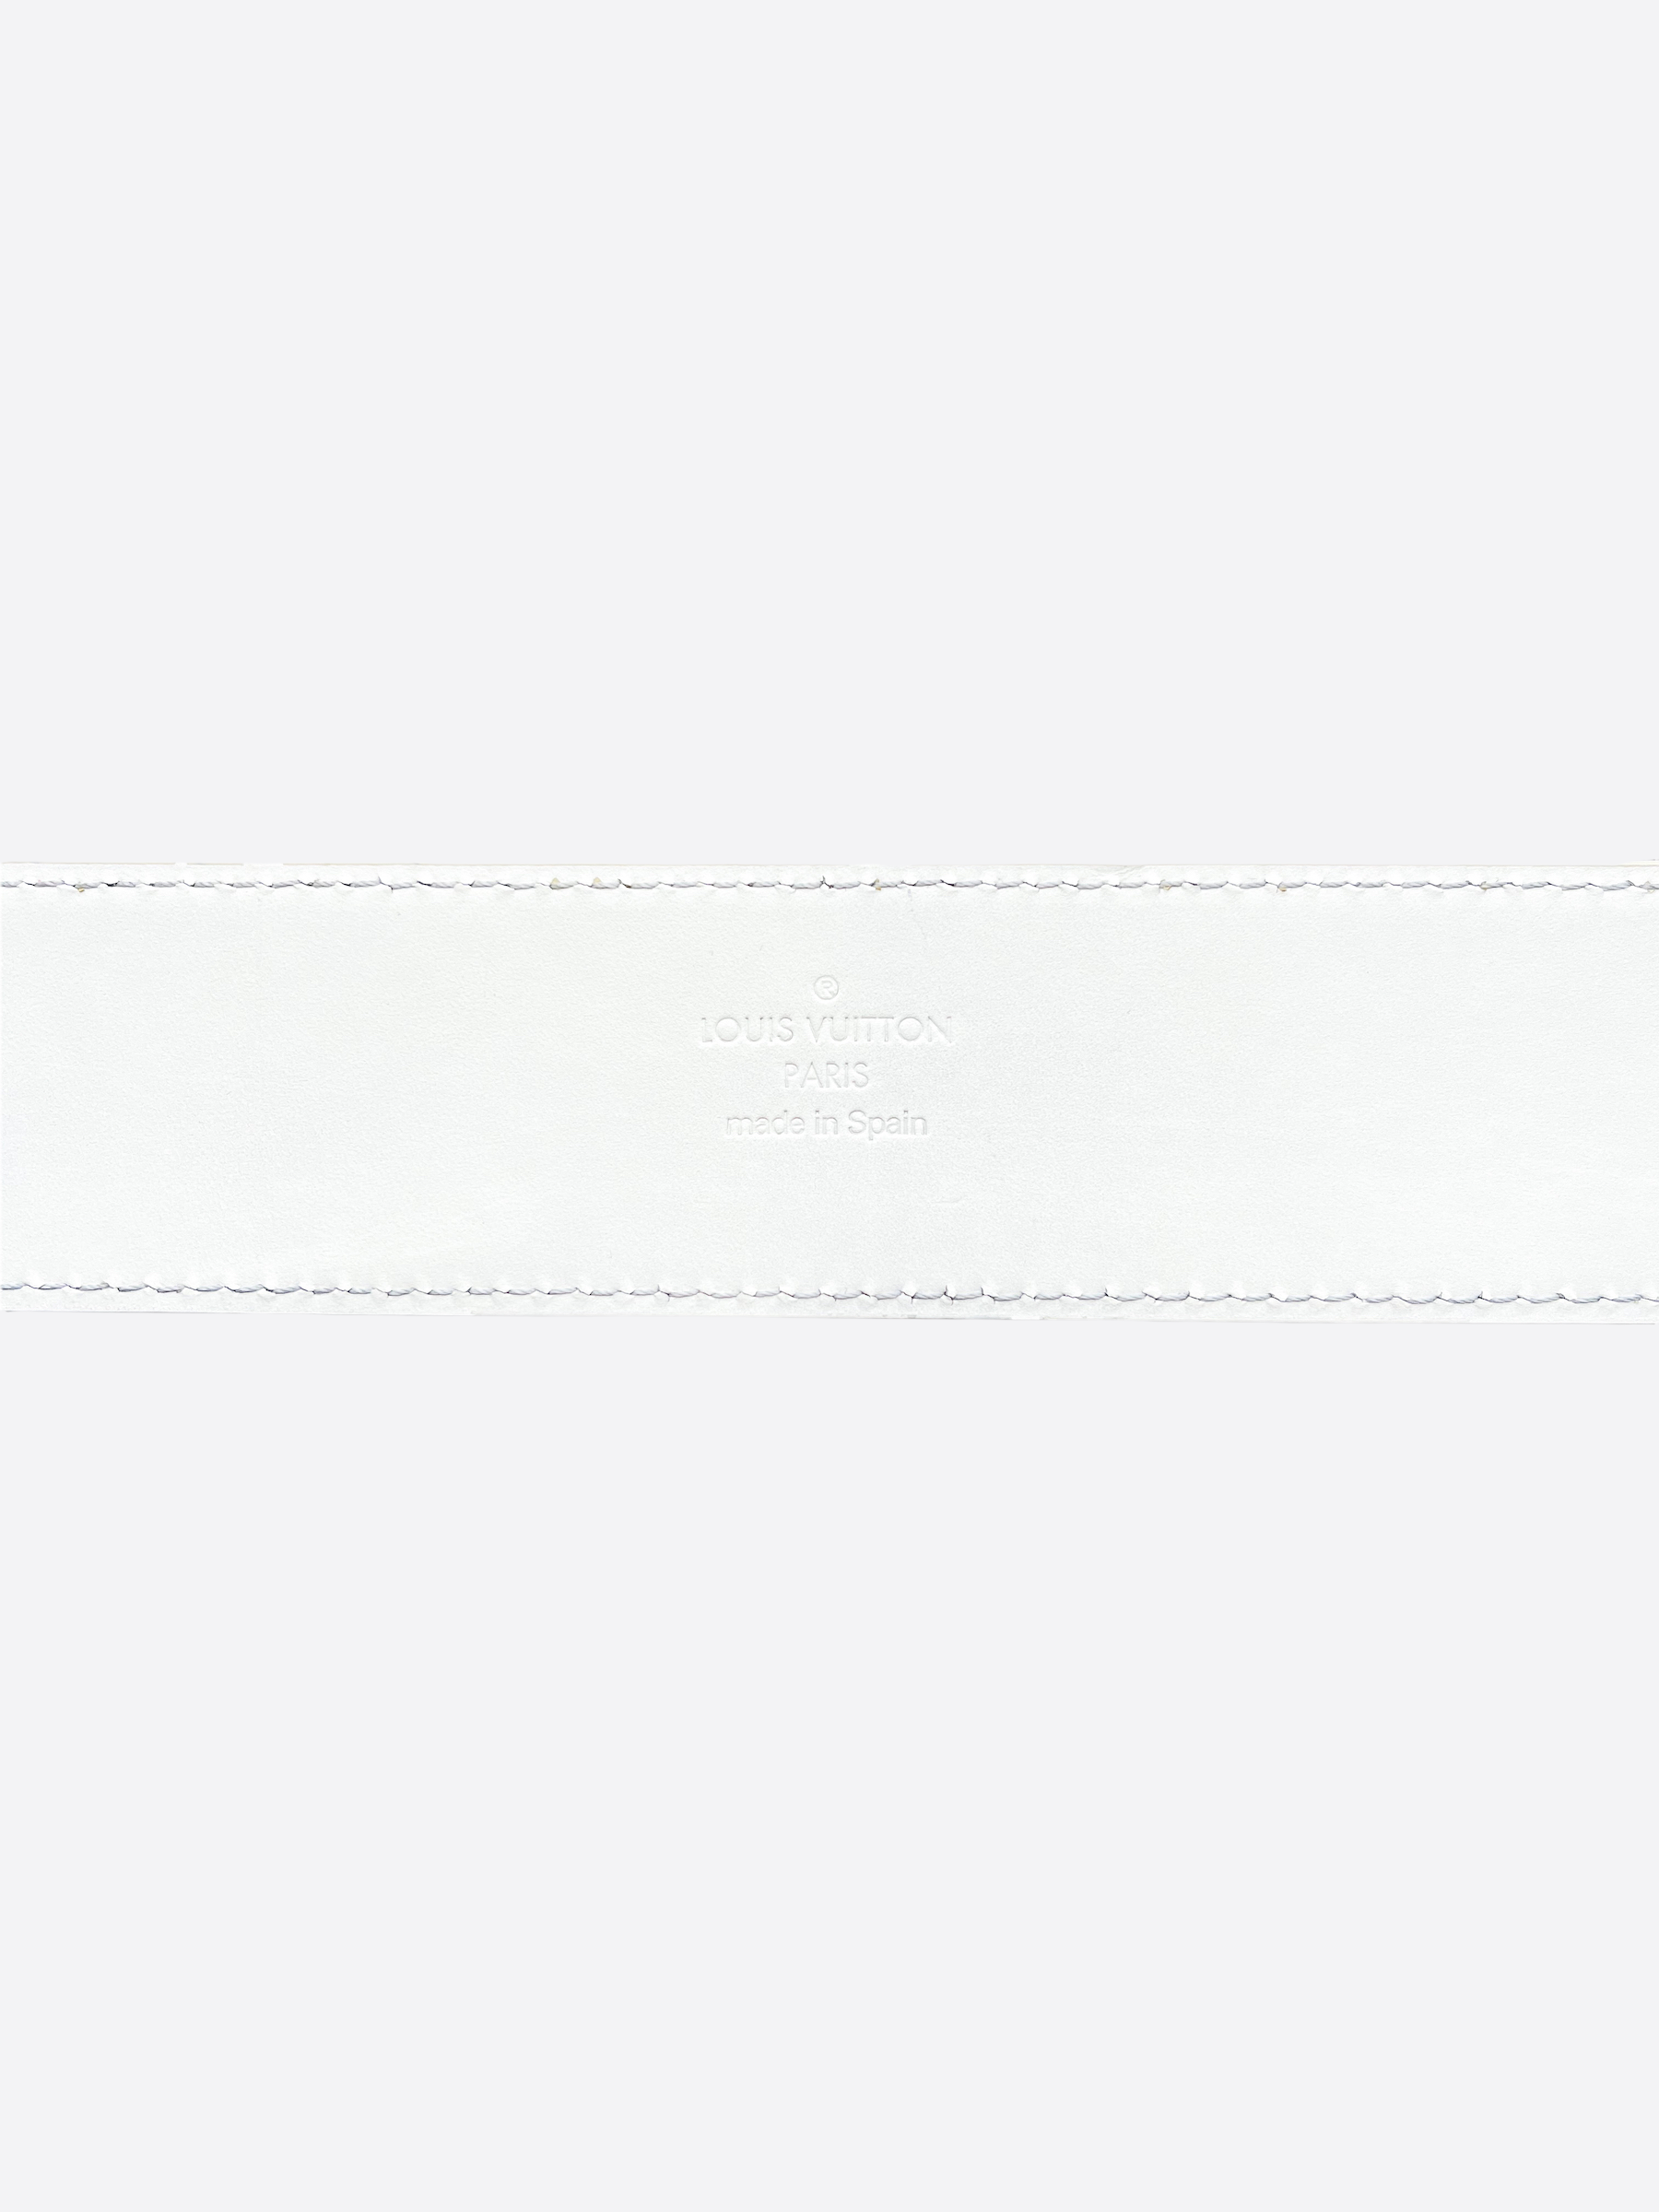 Louis Vuitton Prism Shape Belt w/ Tags - Size US 34